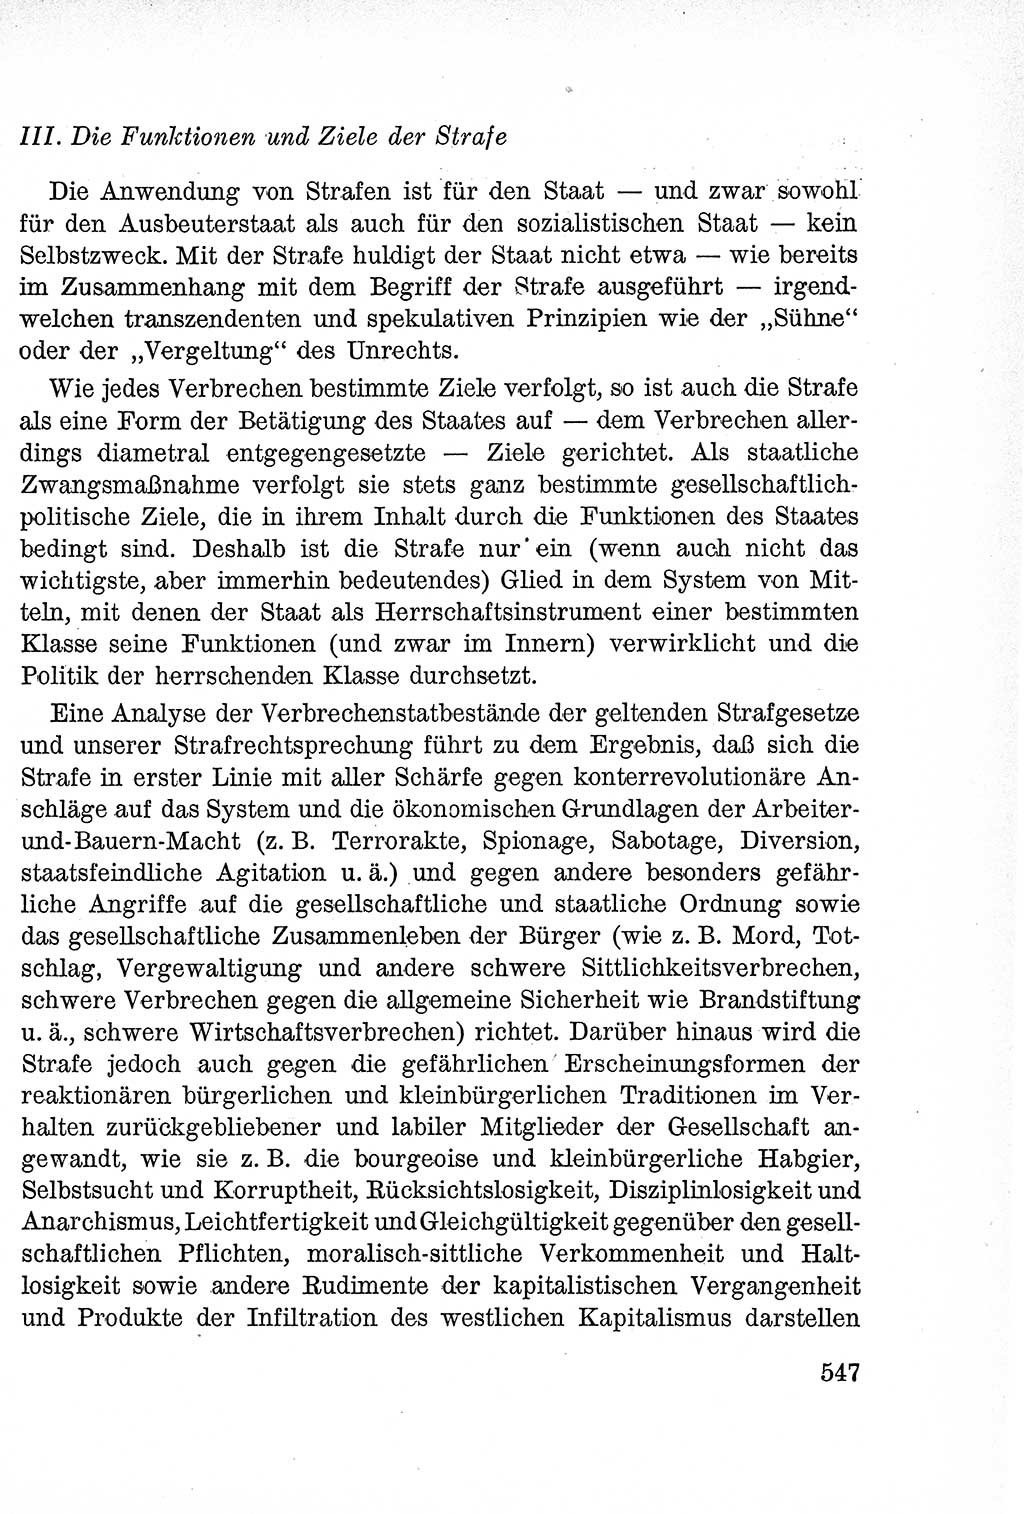 Lehrbuch des Strafrechts der Deutschen Demokratischen Republik (DDR), Allgemeiner Teil 1957, Seite 547 (Lb. Strafr. DDR AT 1957, S. 547)